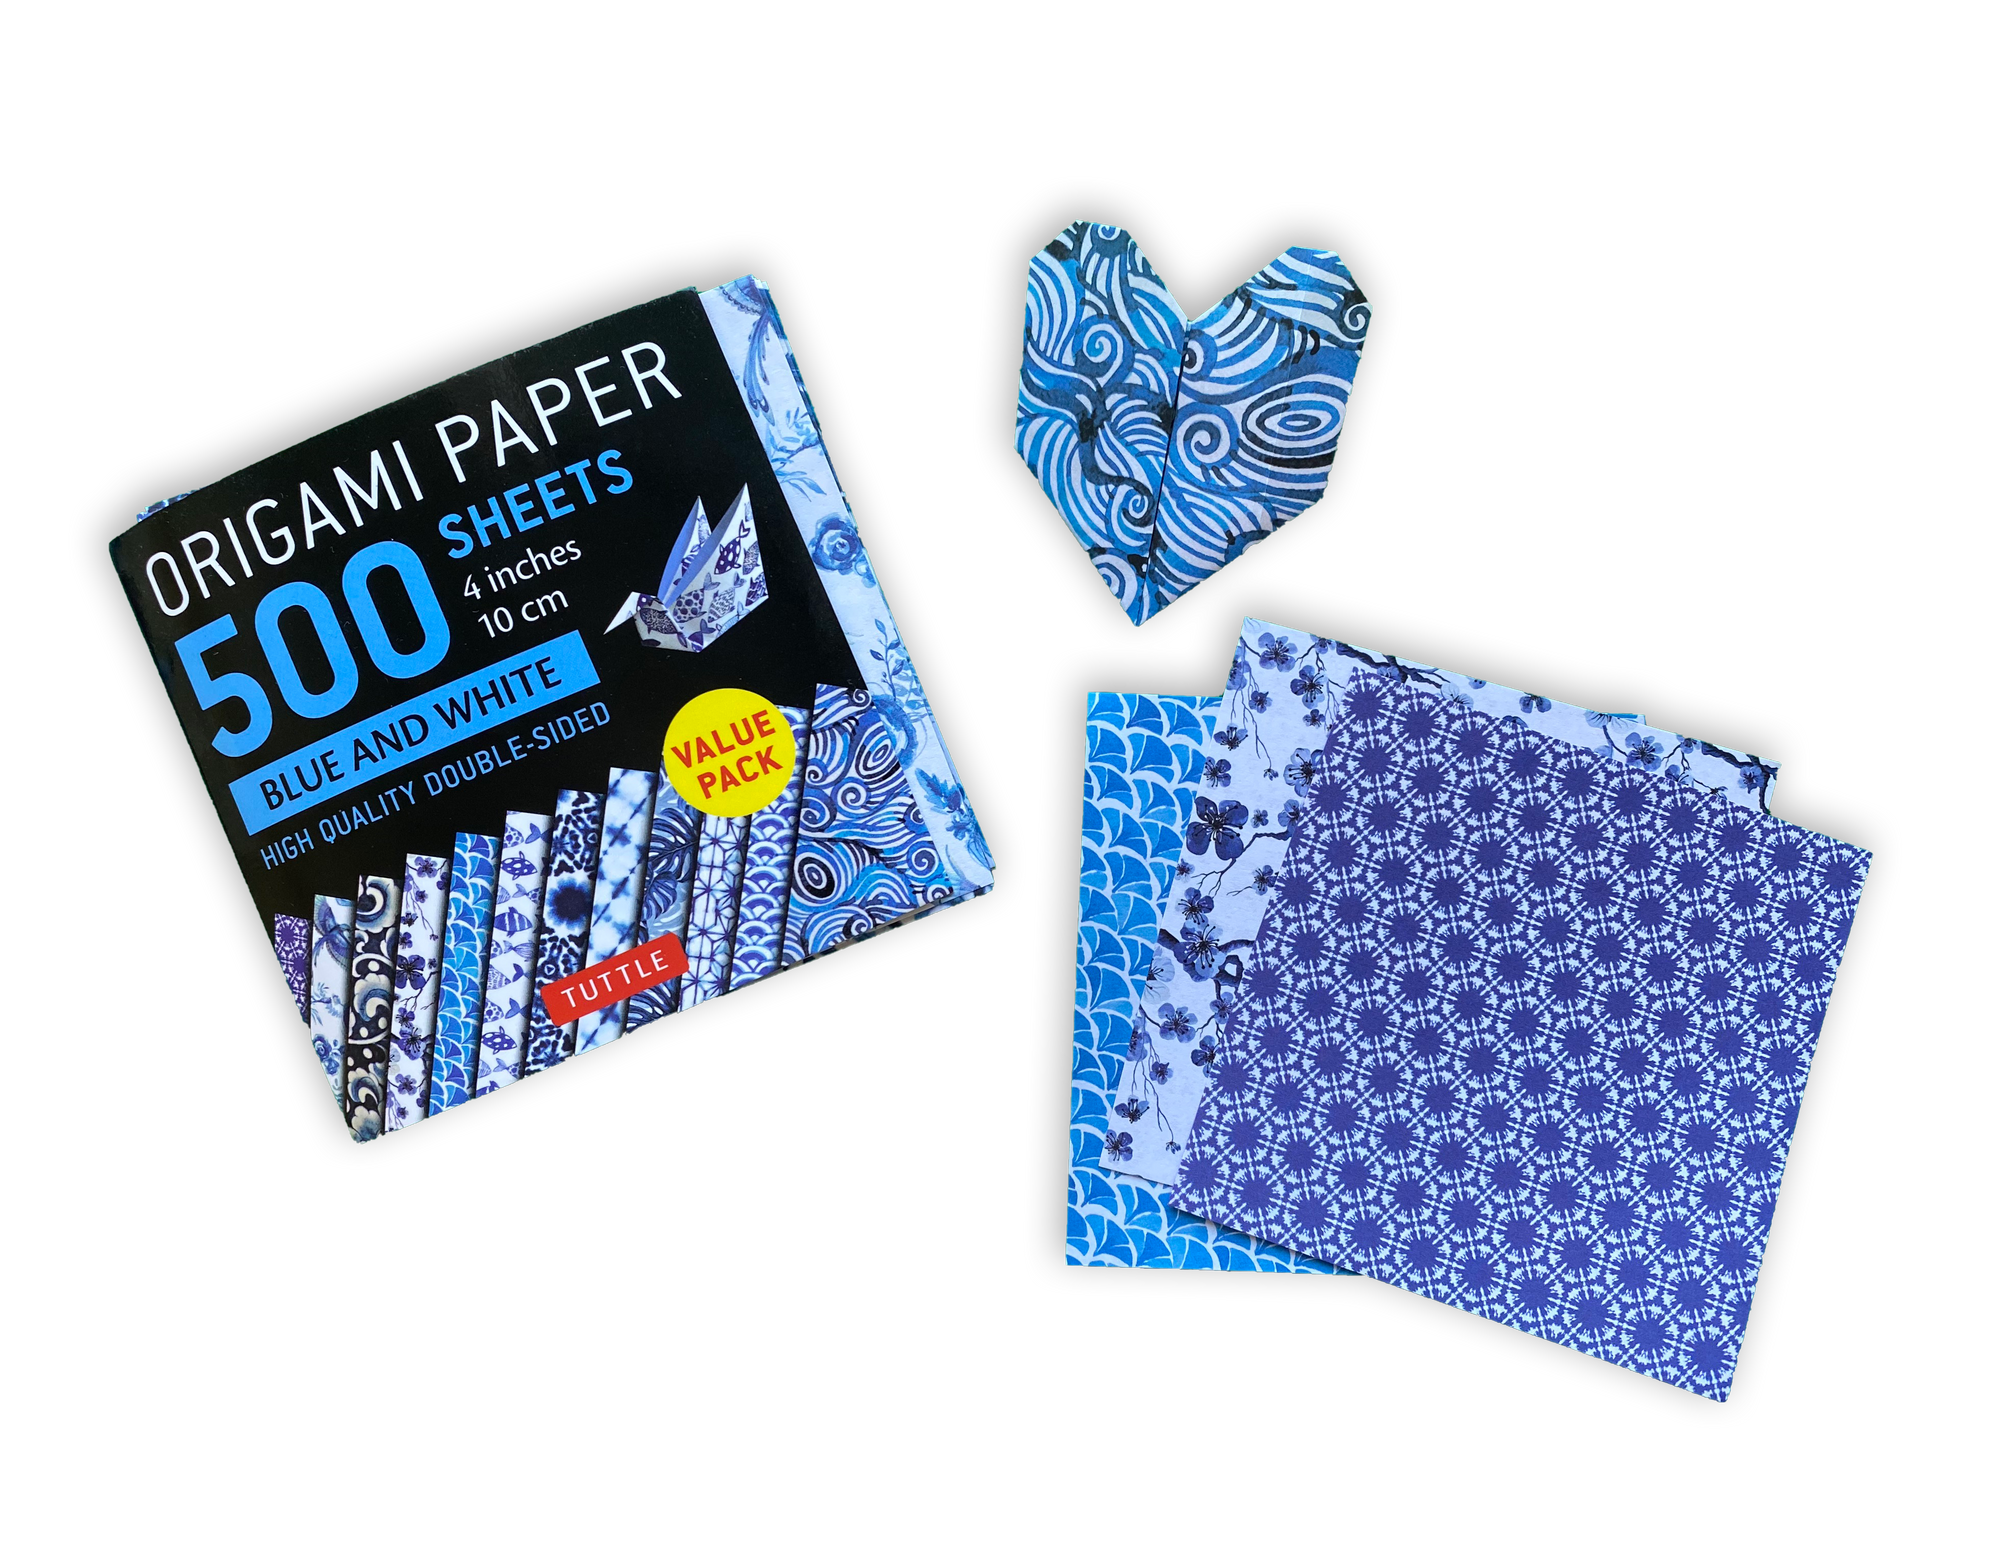 Origami Products - Tuttle Publishing